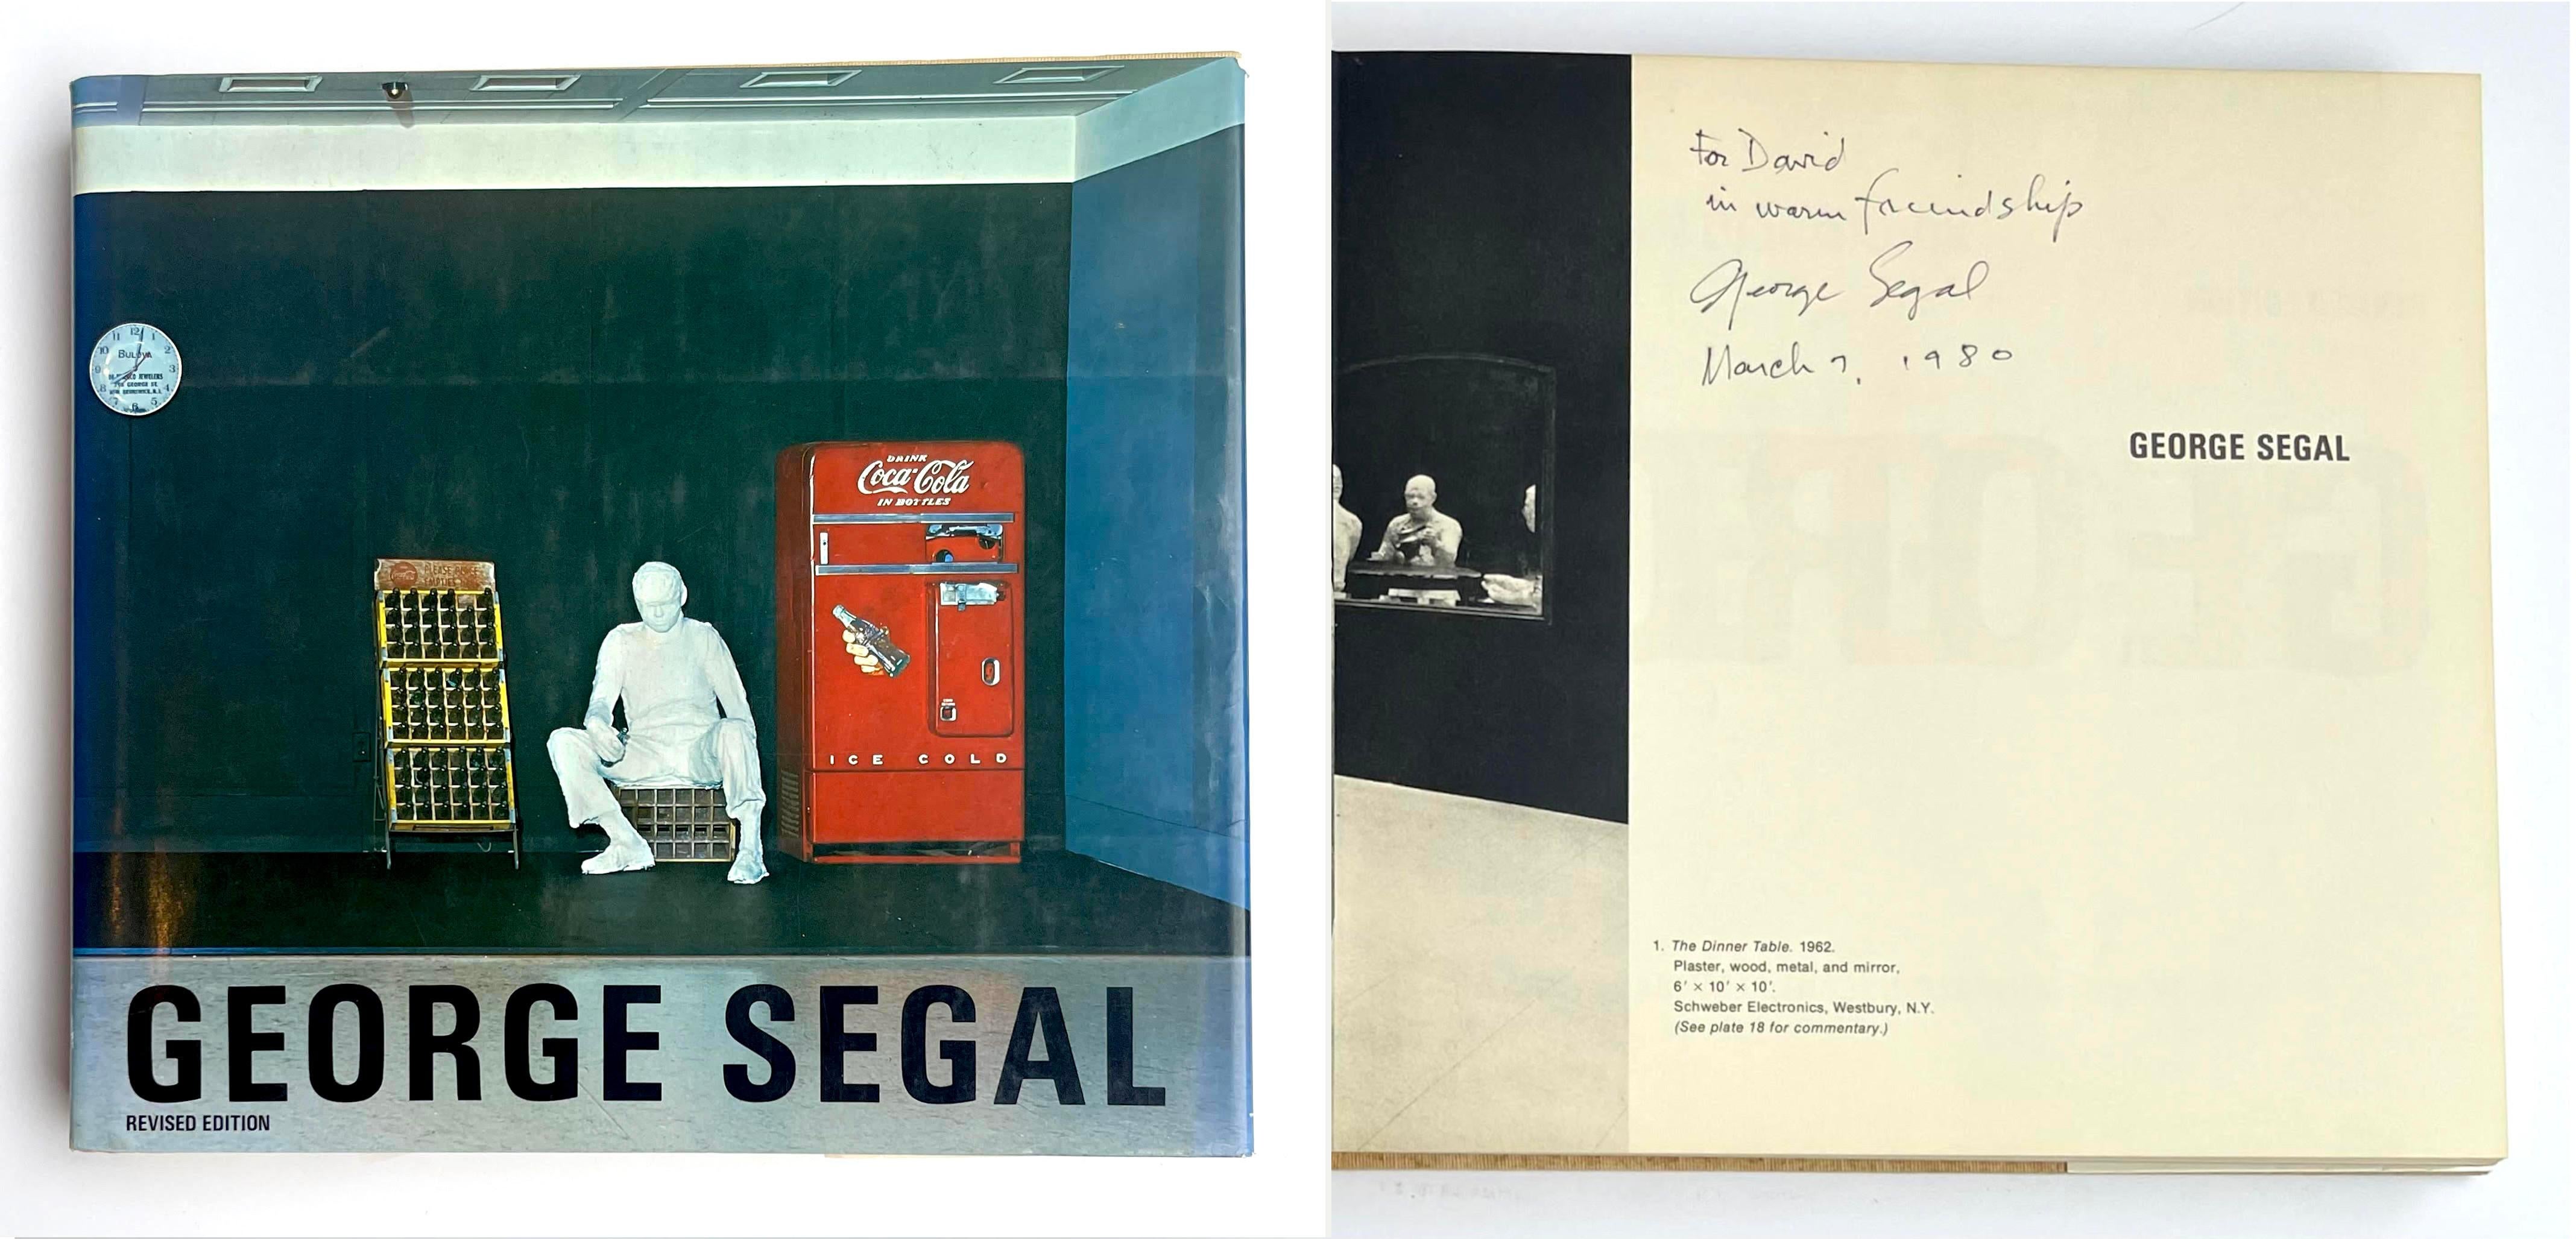 George Segal: Hardback-Monographie  (Hand signiert, datiert und beschriftet)